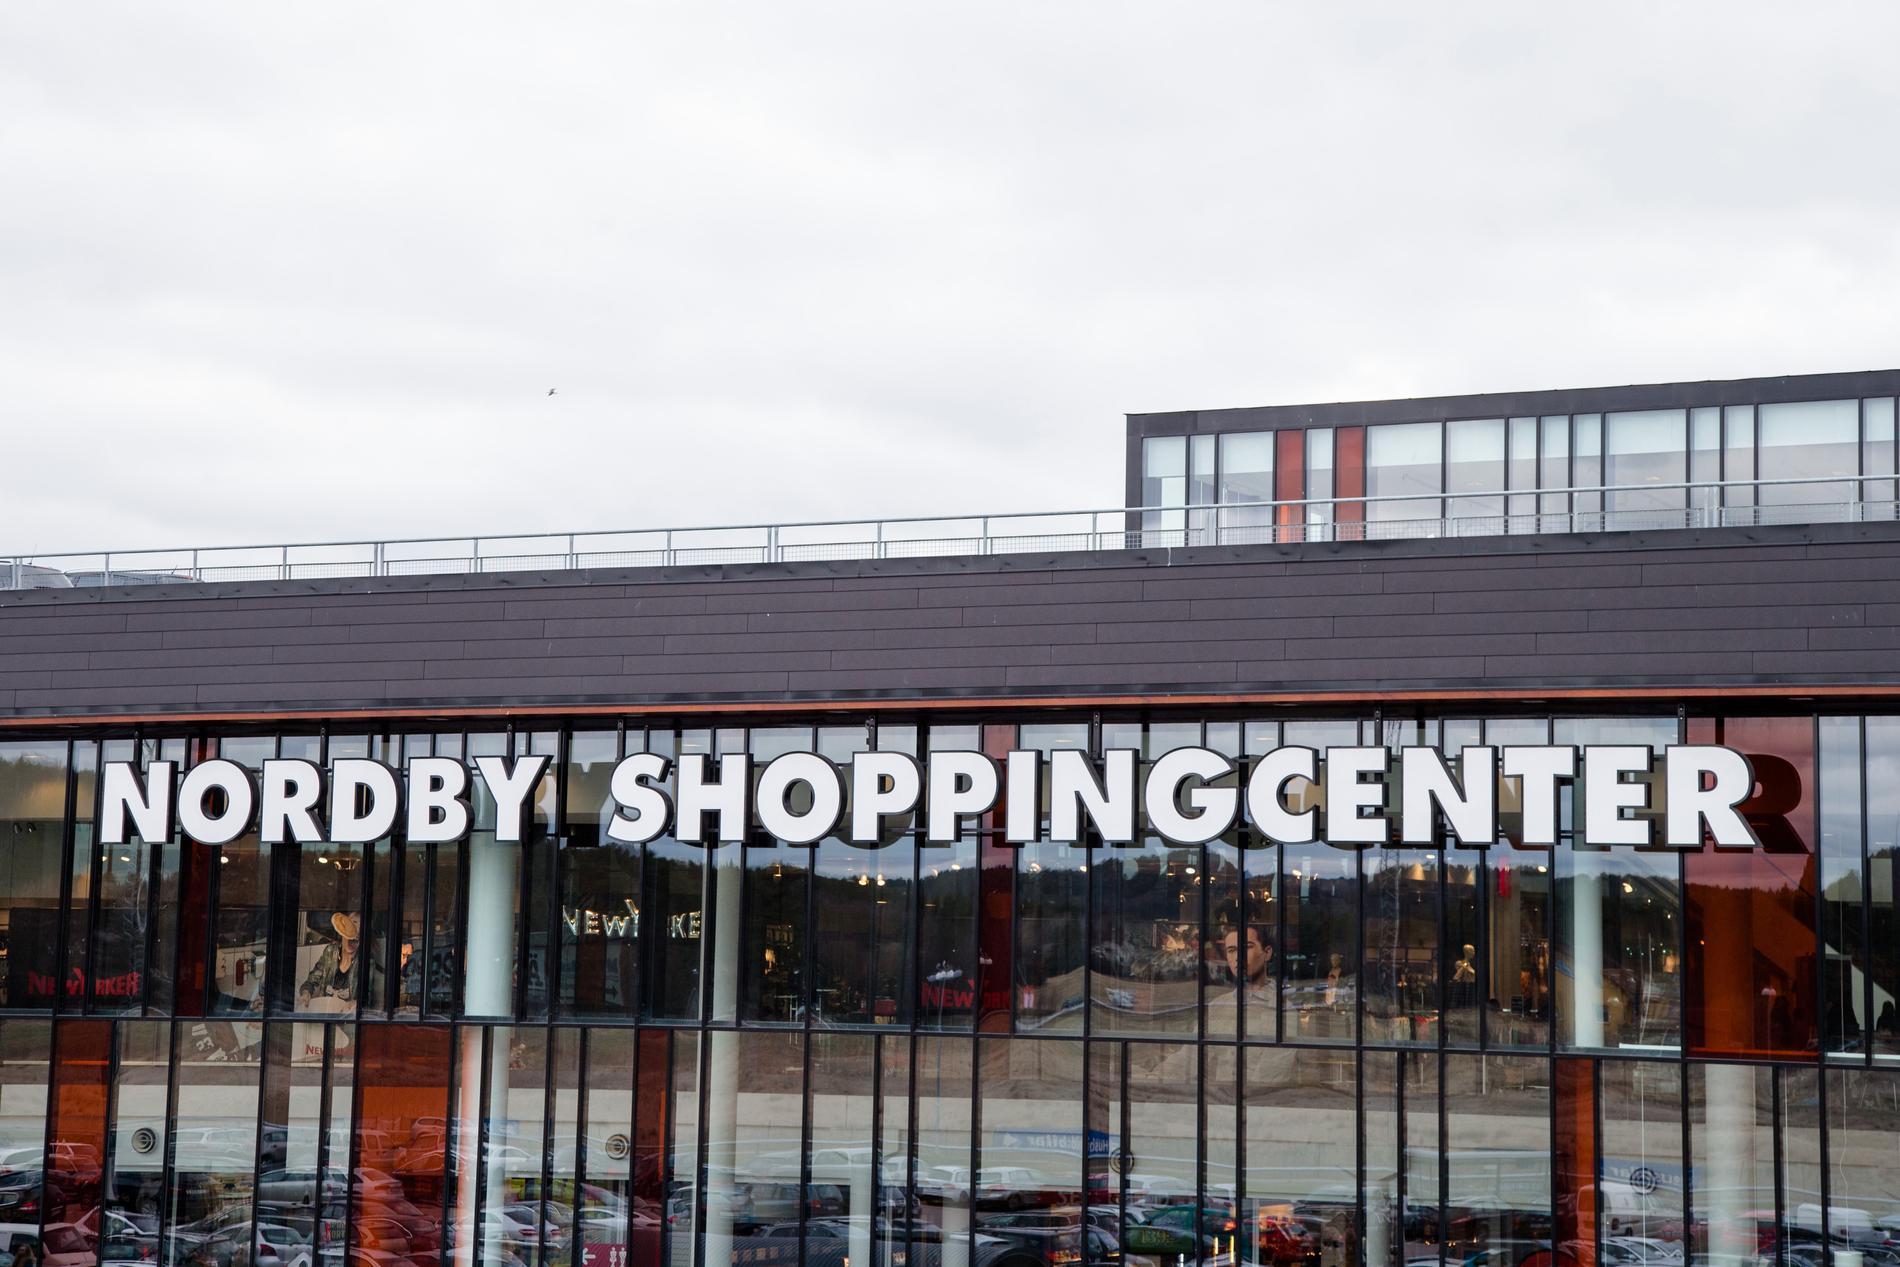 På Nordby Shoppingcenter går alla och väntar på den norska regeringens besked, som ska komma på fredag, om gränsen till Sverige ska öppnas eller inte. Arkivbild